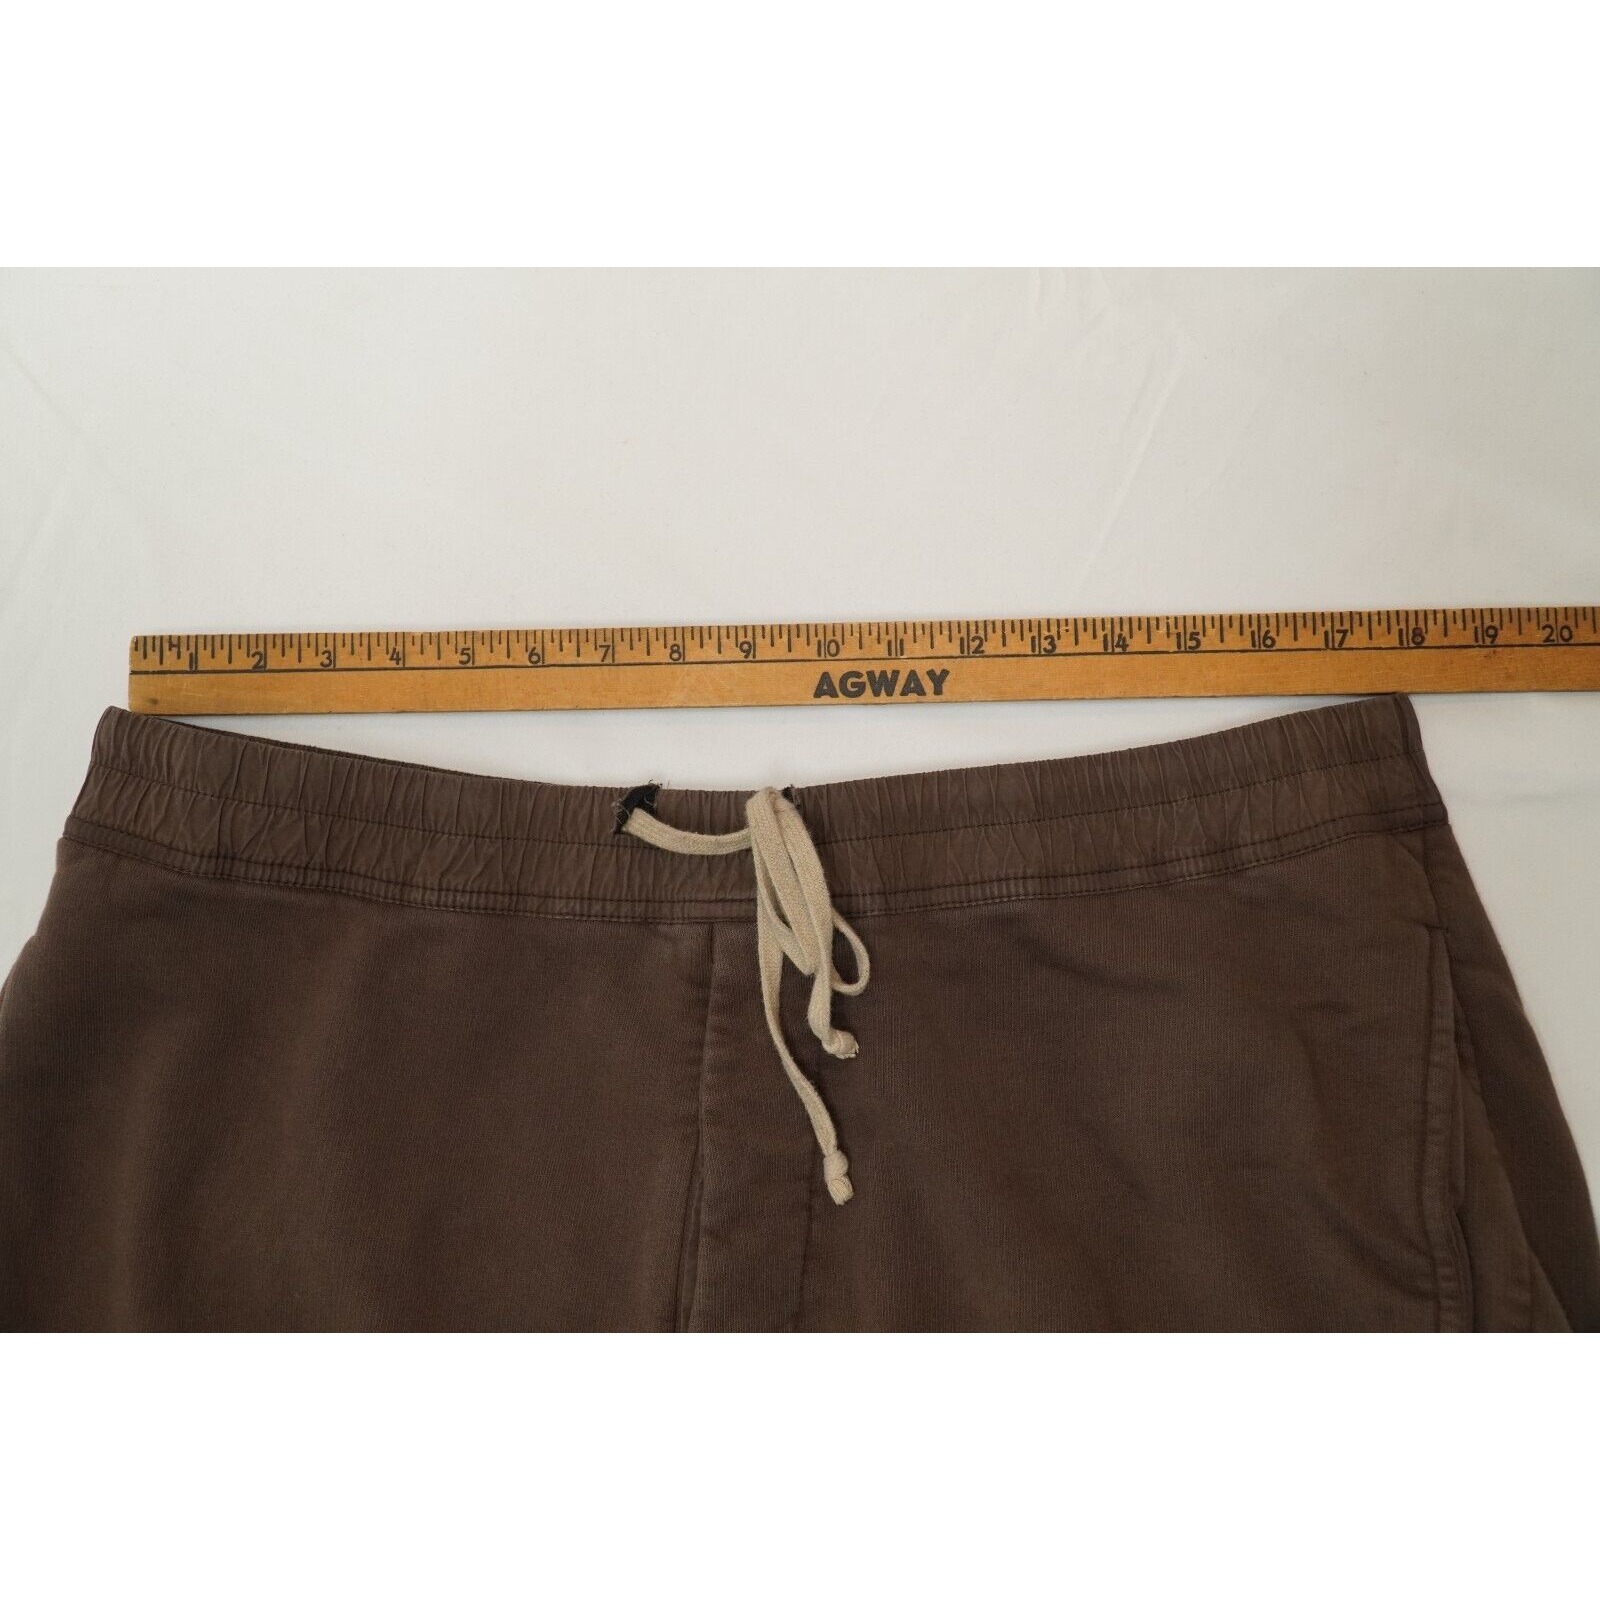 Rick Shorts Drop Crotch Cotton Macassar Brown Large - 21